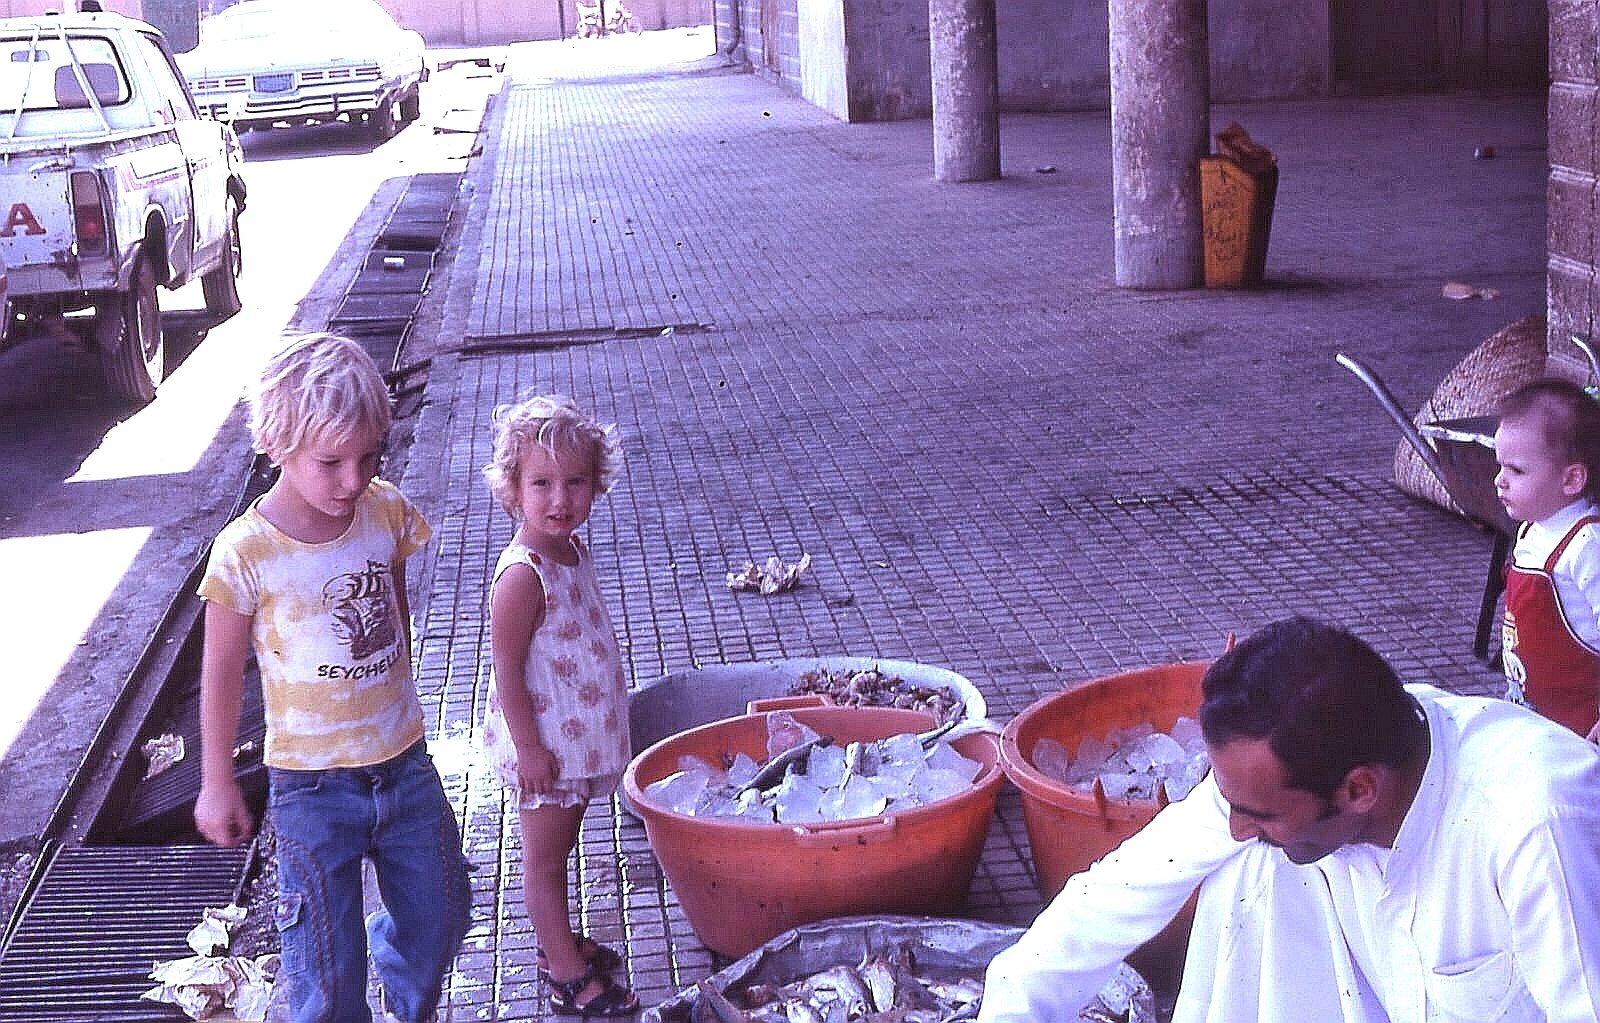 لقطة من سوق السمك قبل 50 عام